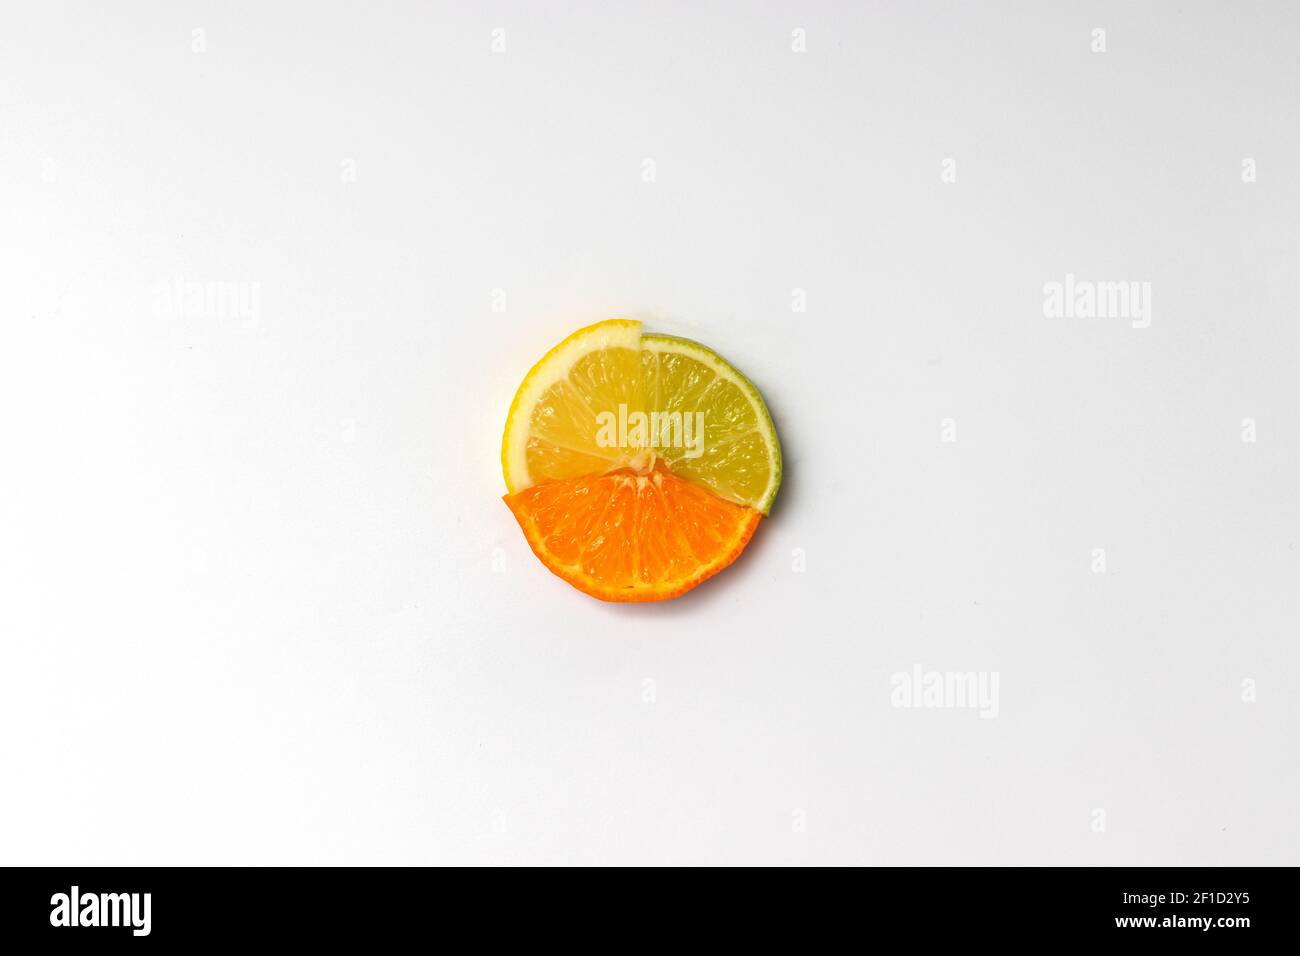 Motif de tranches de citron, d'orange et de citron vert sur fond blanc. Concept d'été ou de printemps très tendance Banque D'Images